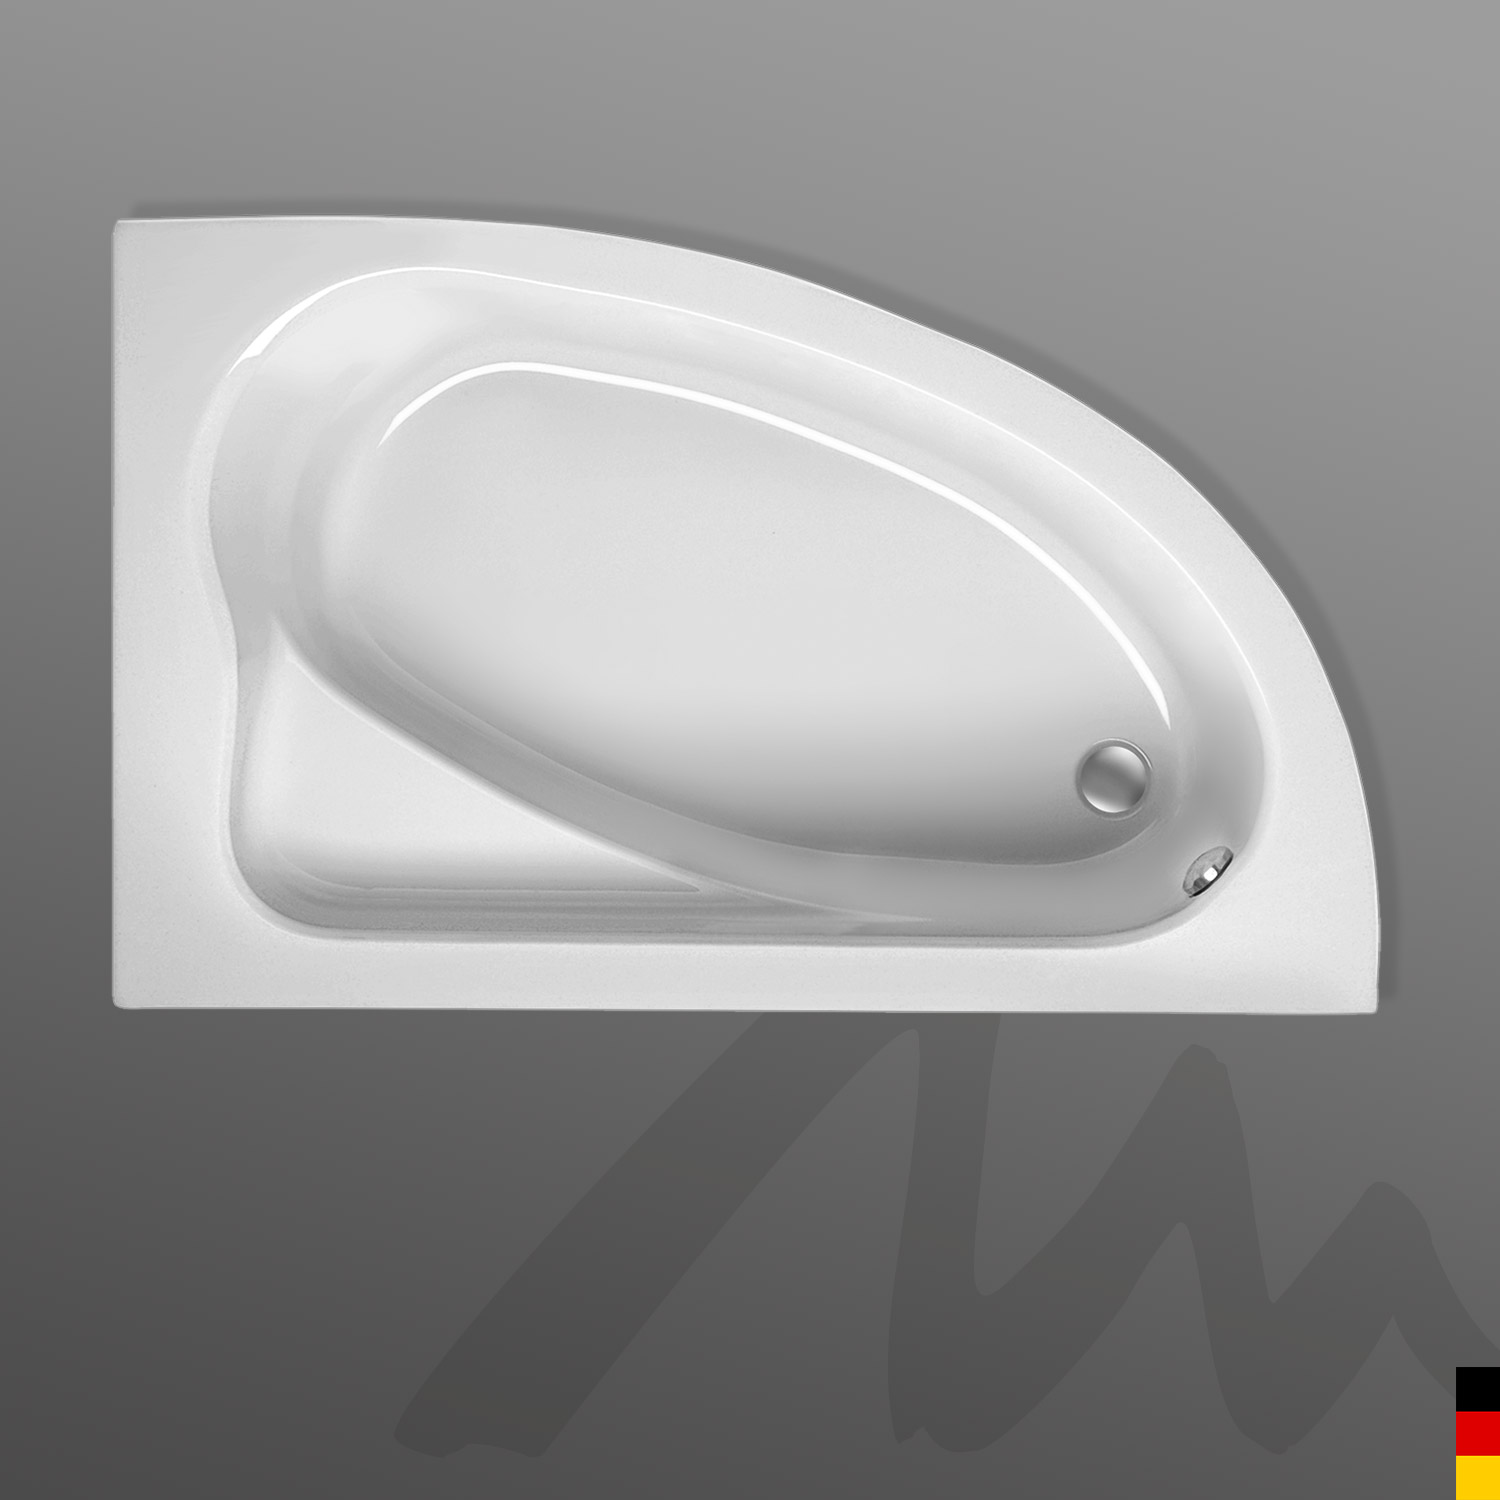 Mauersberger Badewanne Eckwanne Aspera 150/100 links mit Schürze/Panel 1-seitig - weiß